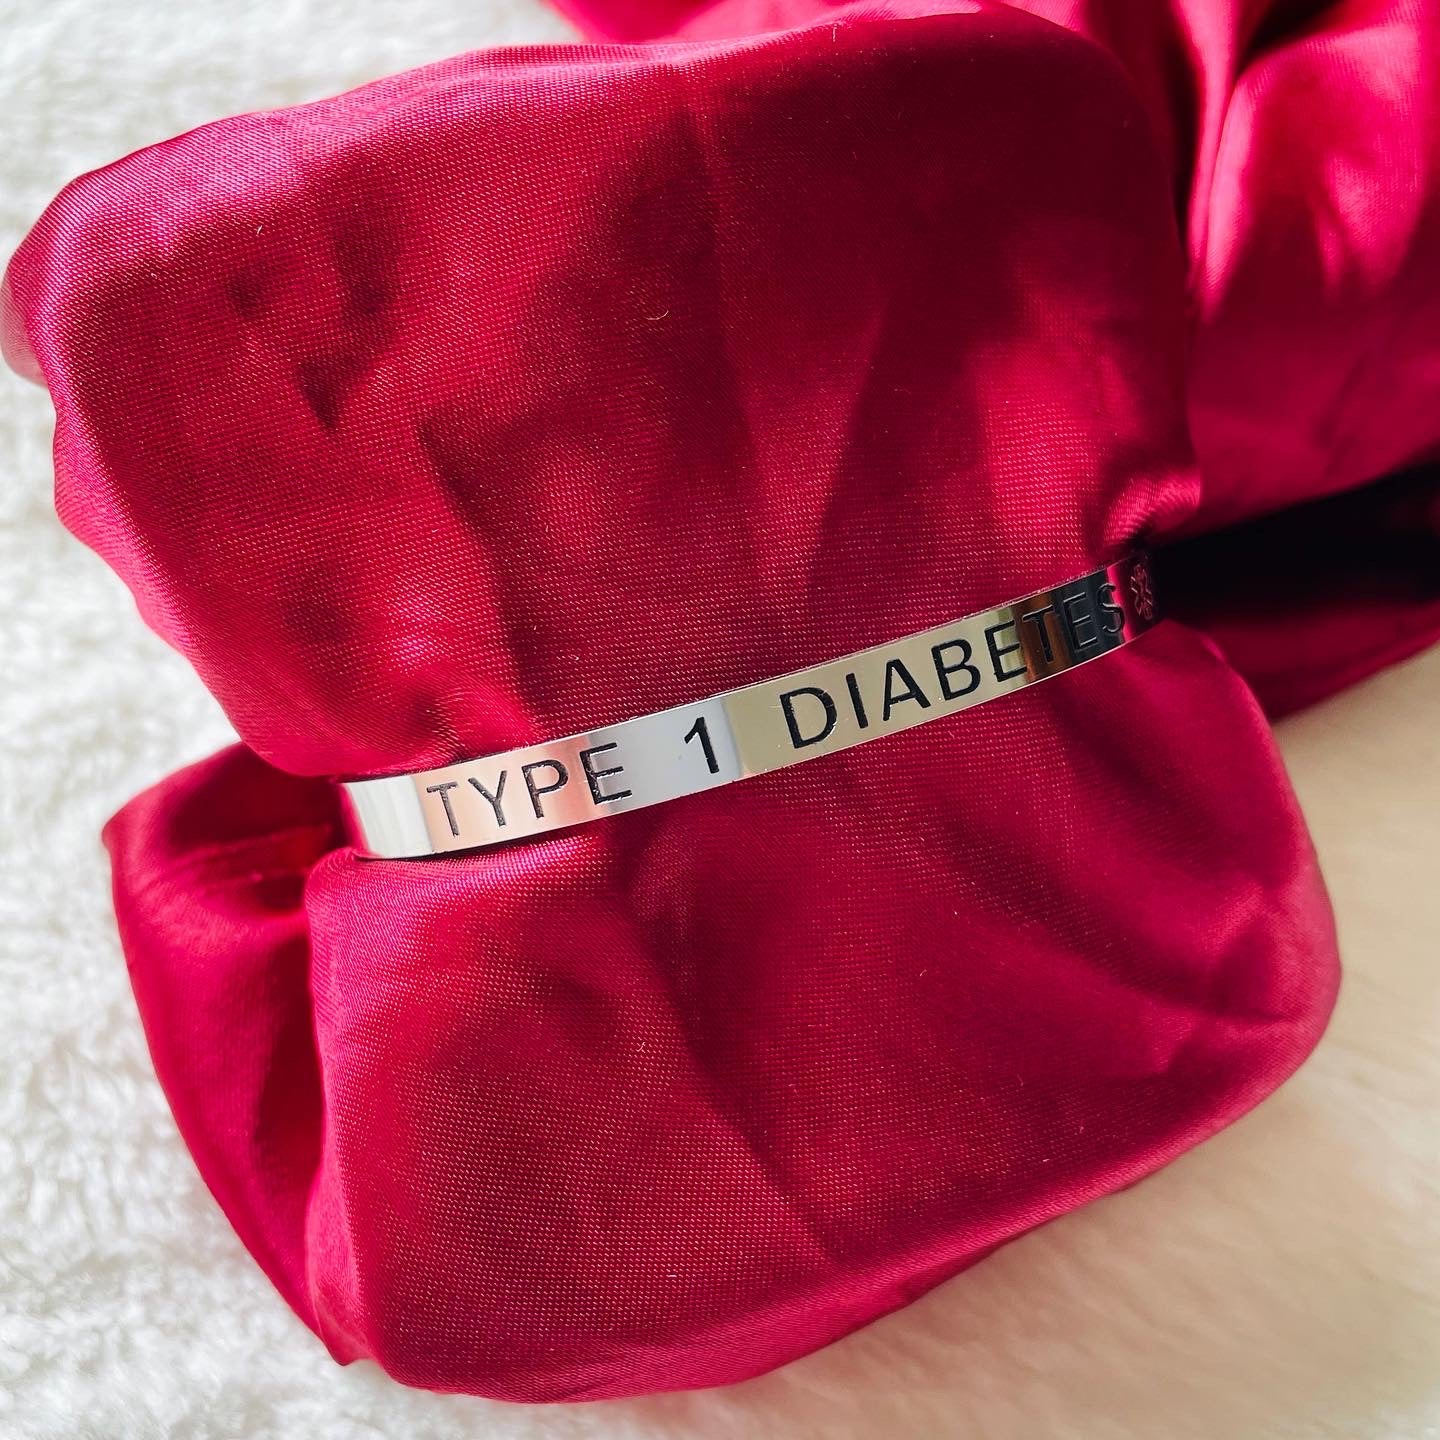 Type 1 Diabetes Cuff Bracelet